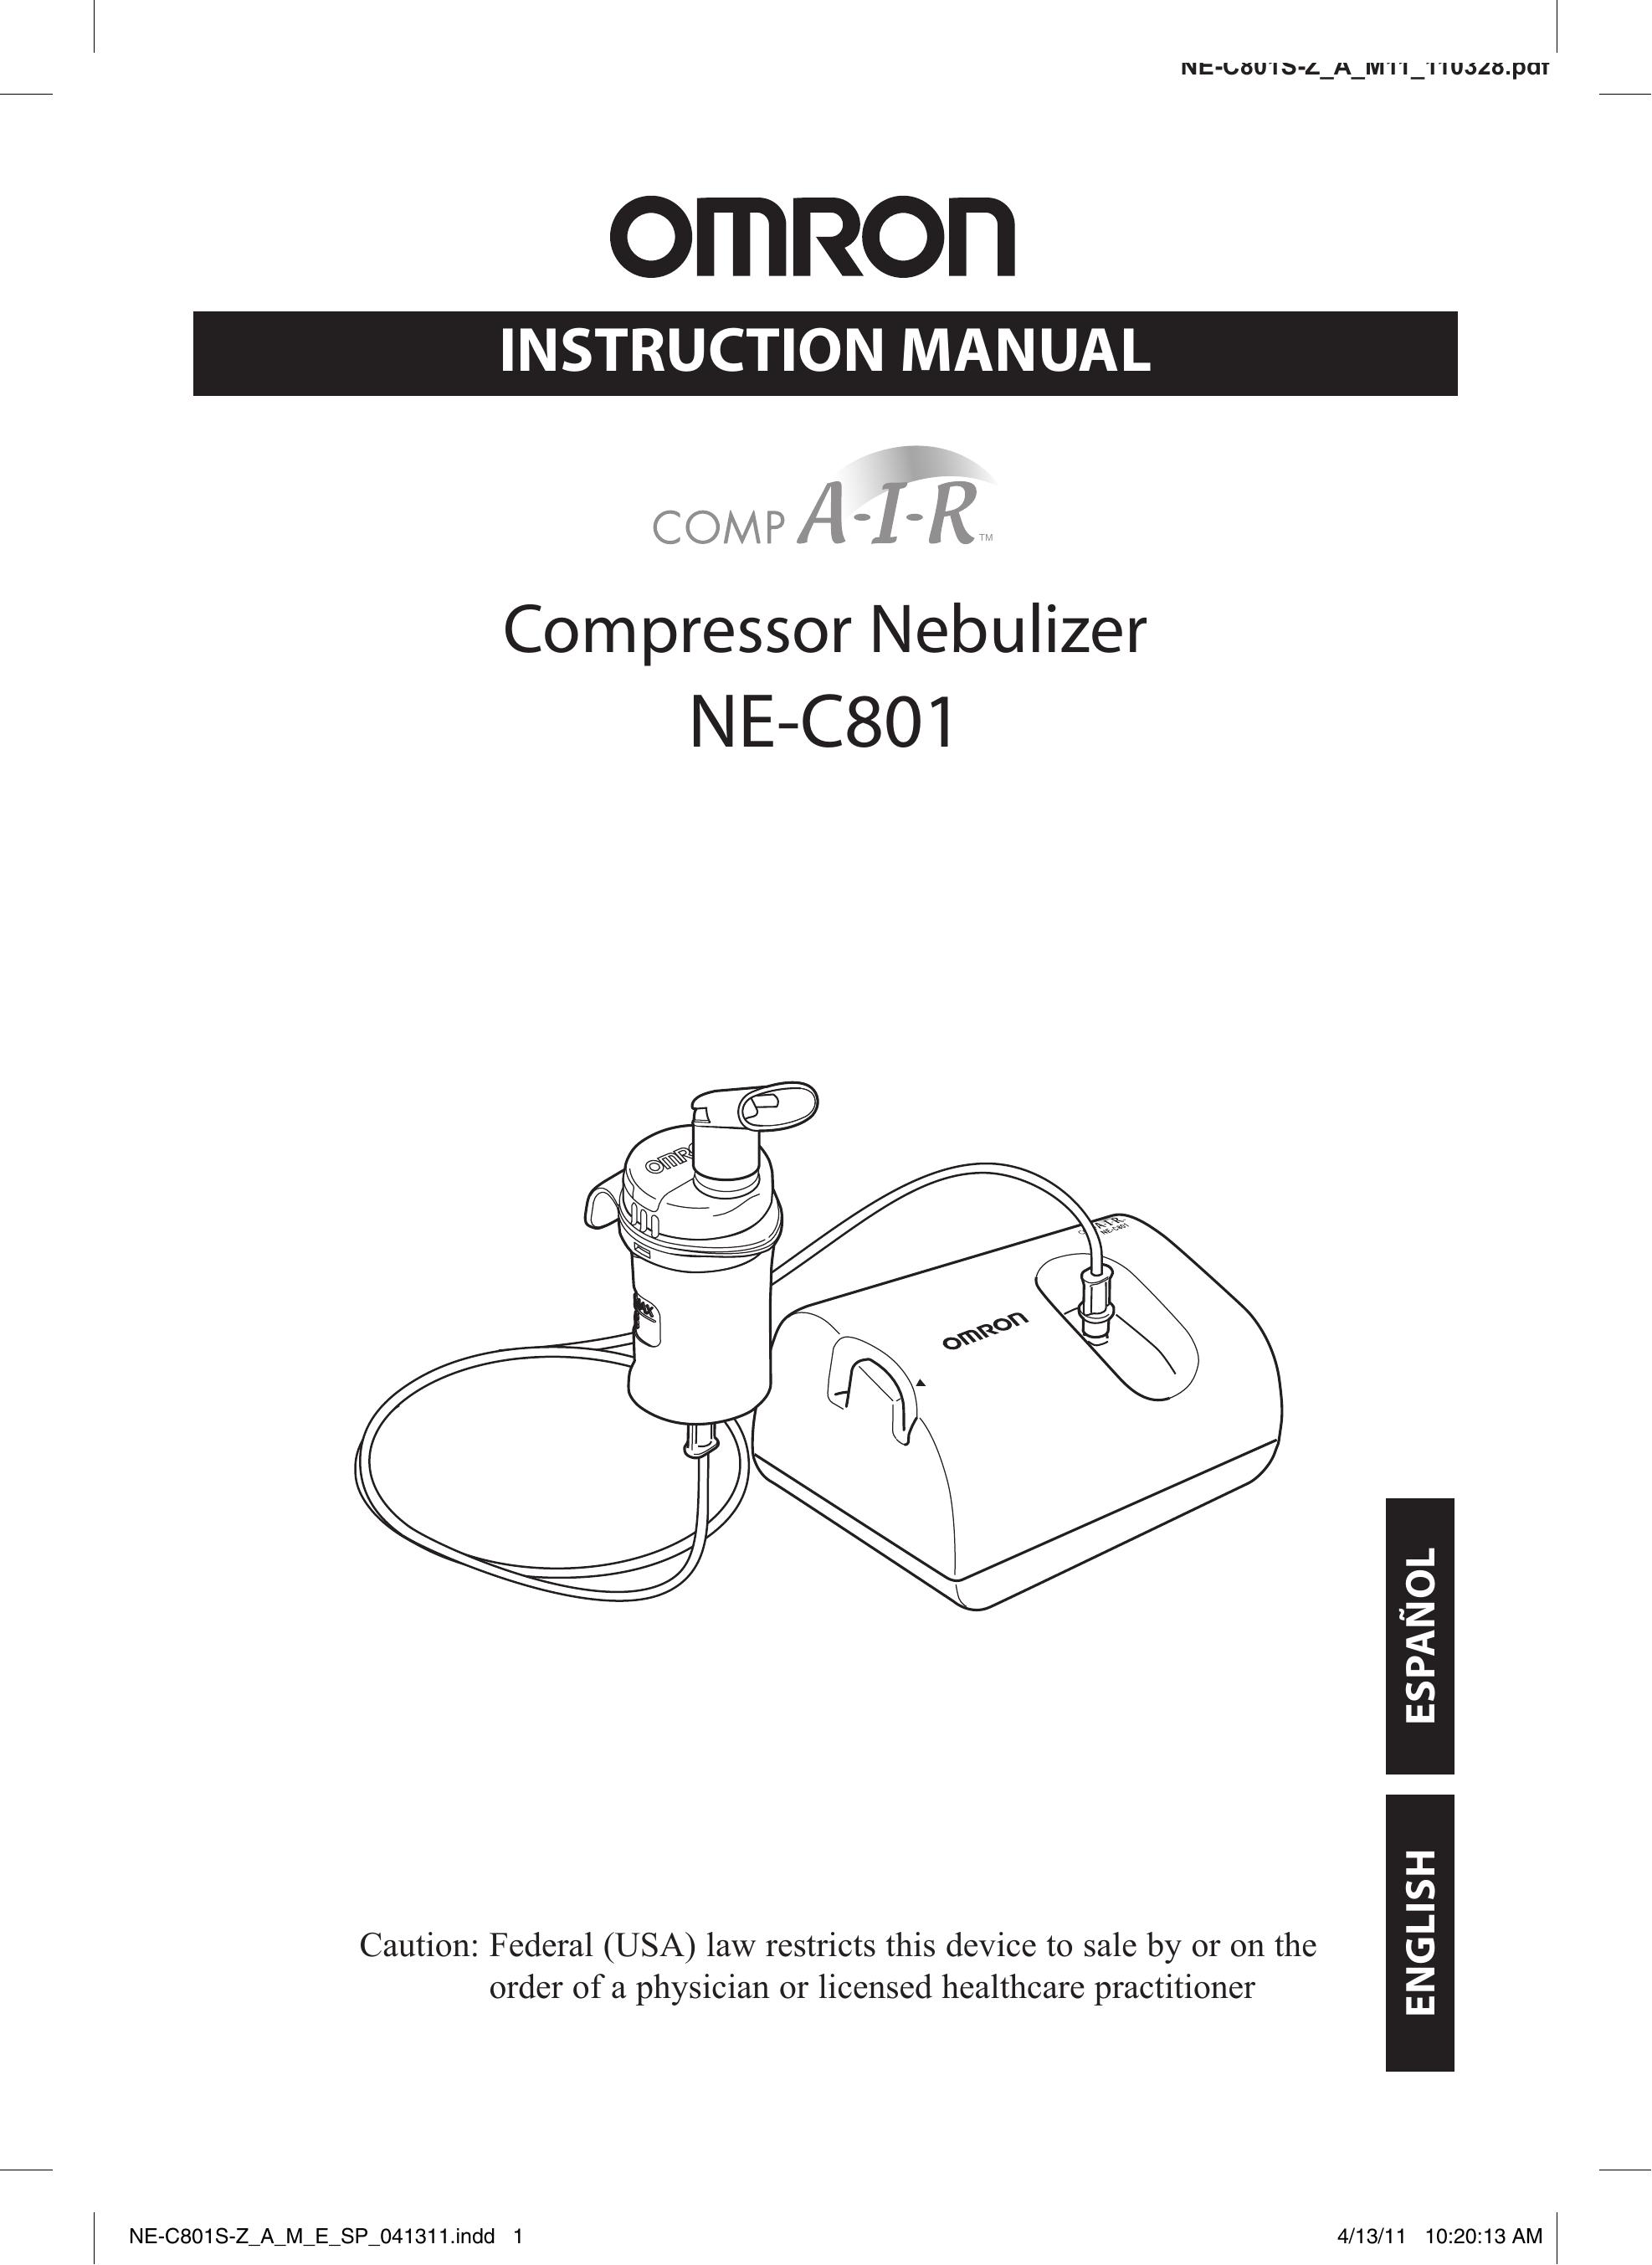 Omron NE-C801 Nebulizer User Manual